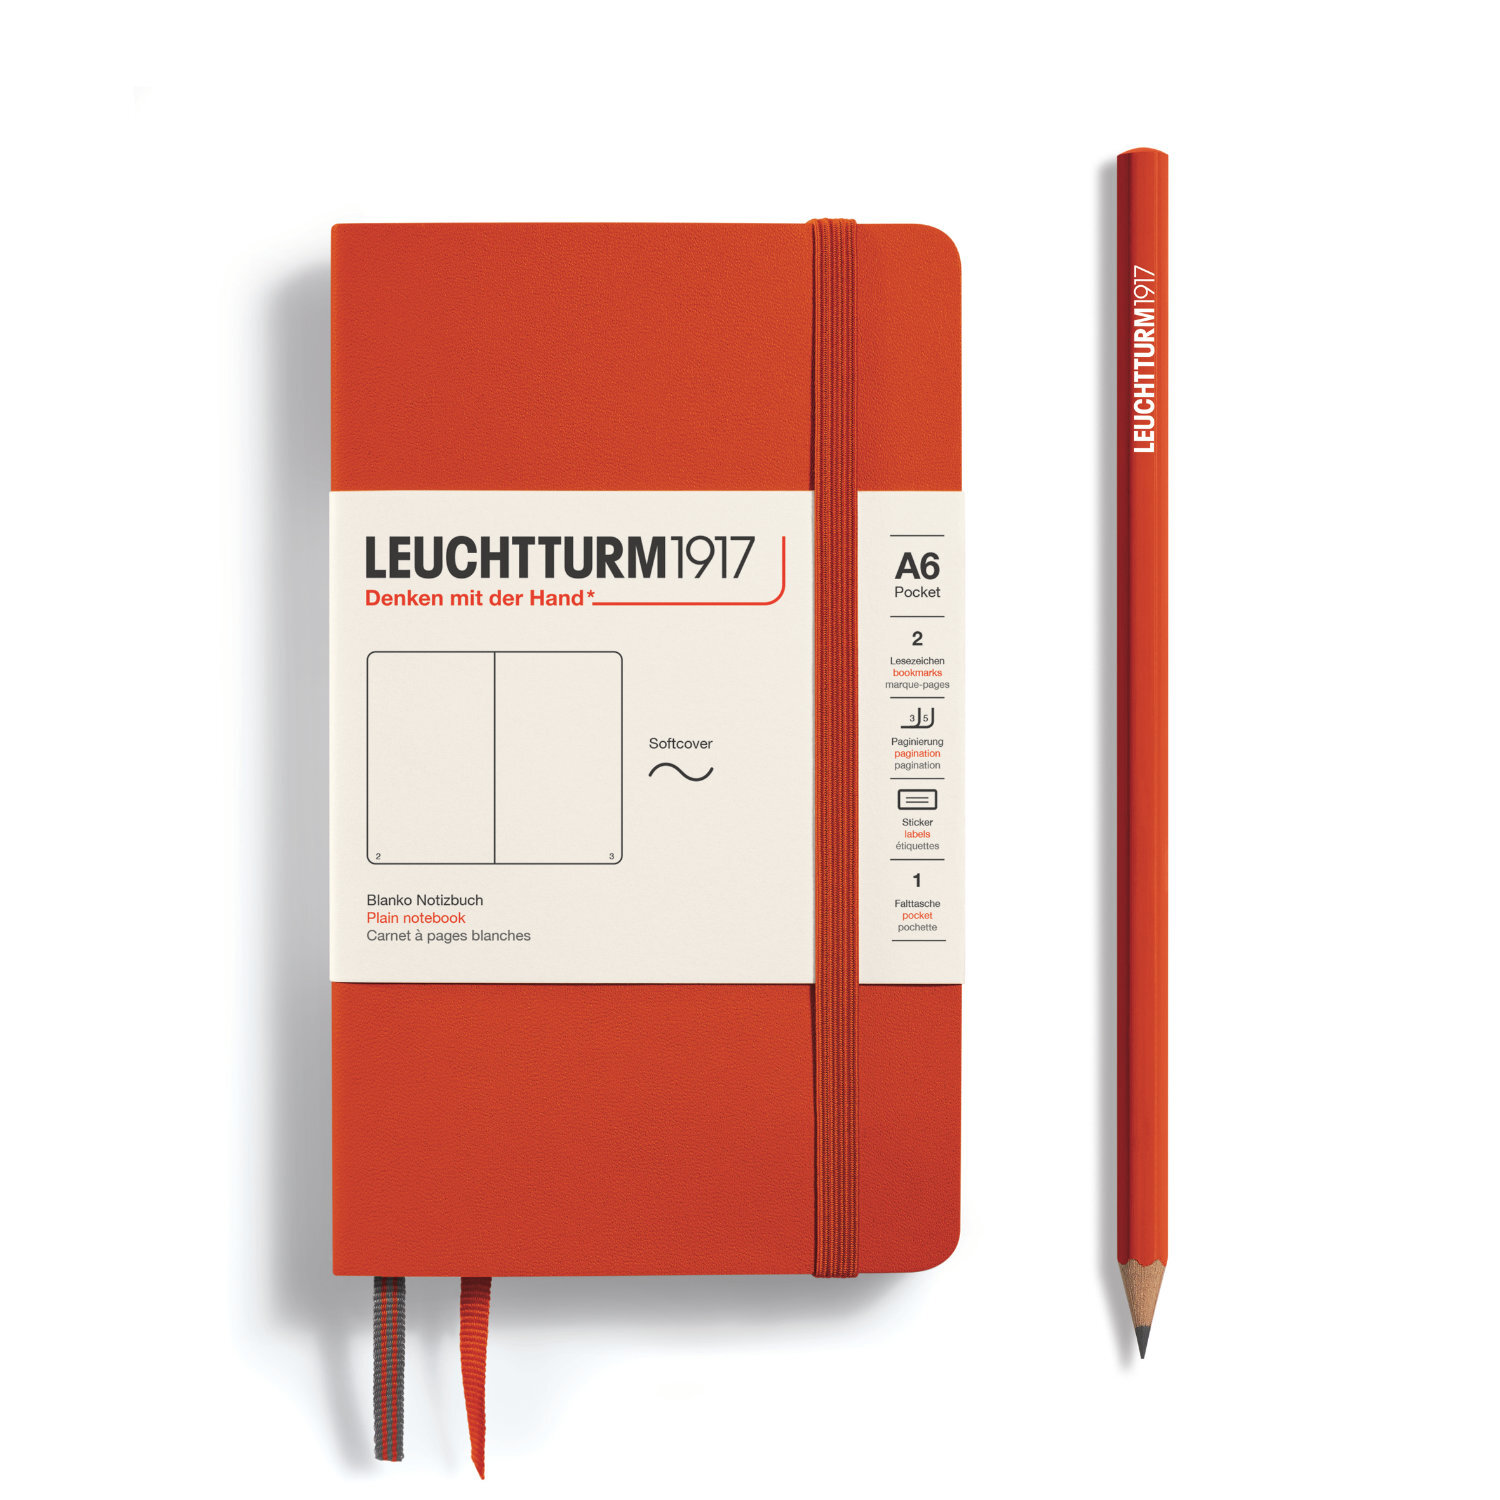 Notizbuch Pocket blanko Softcover A6